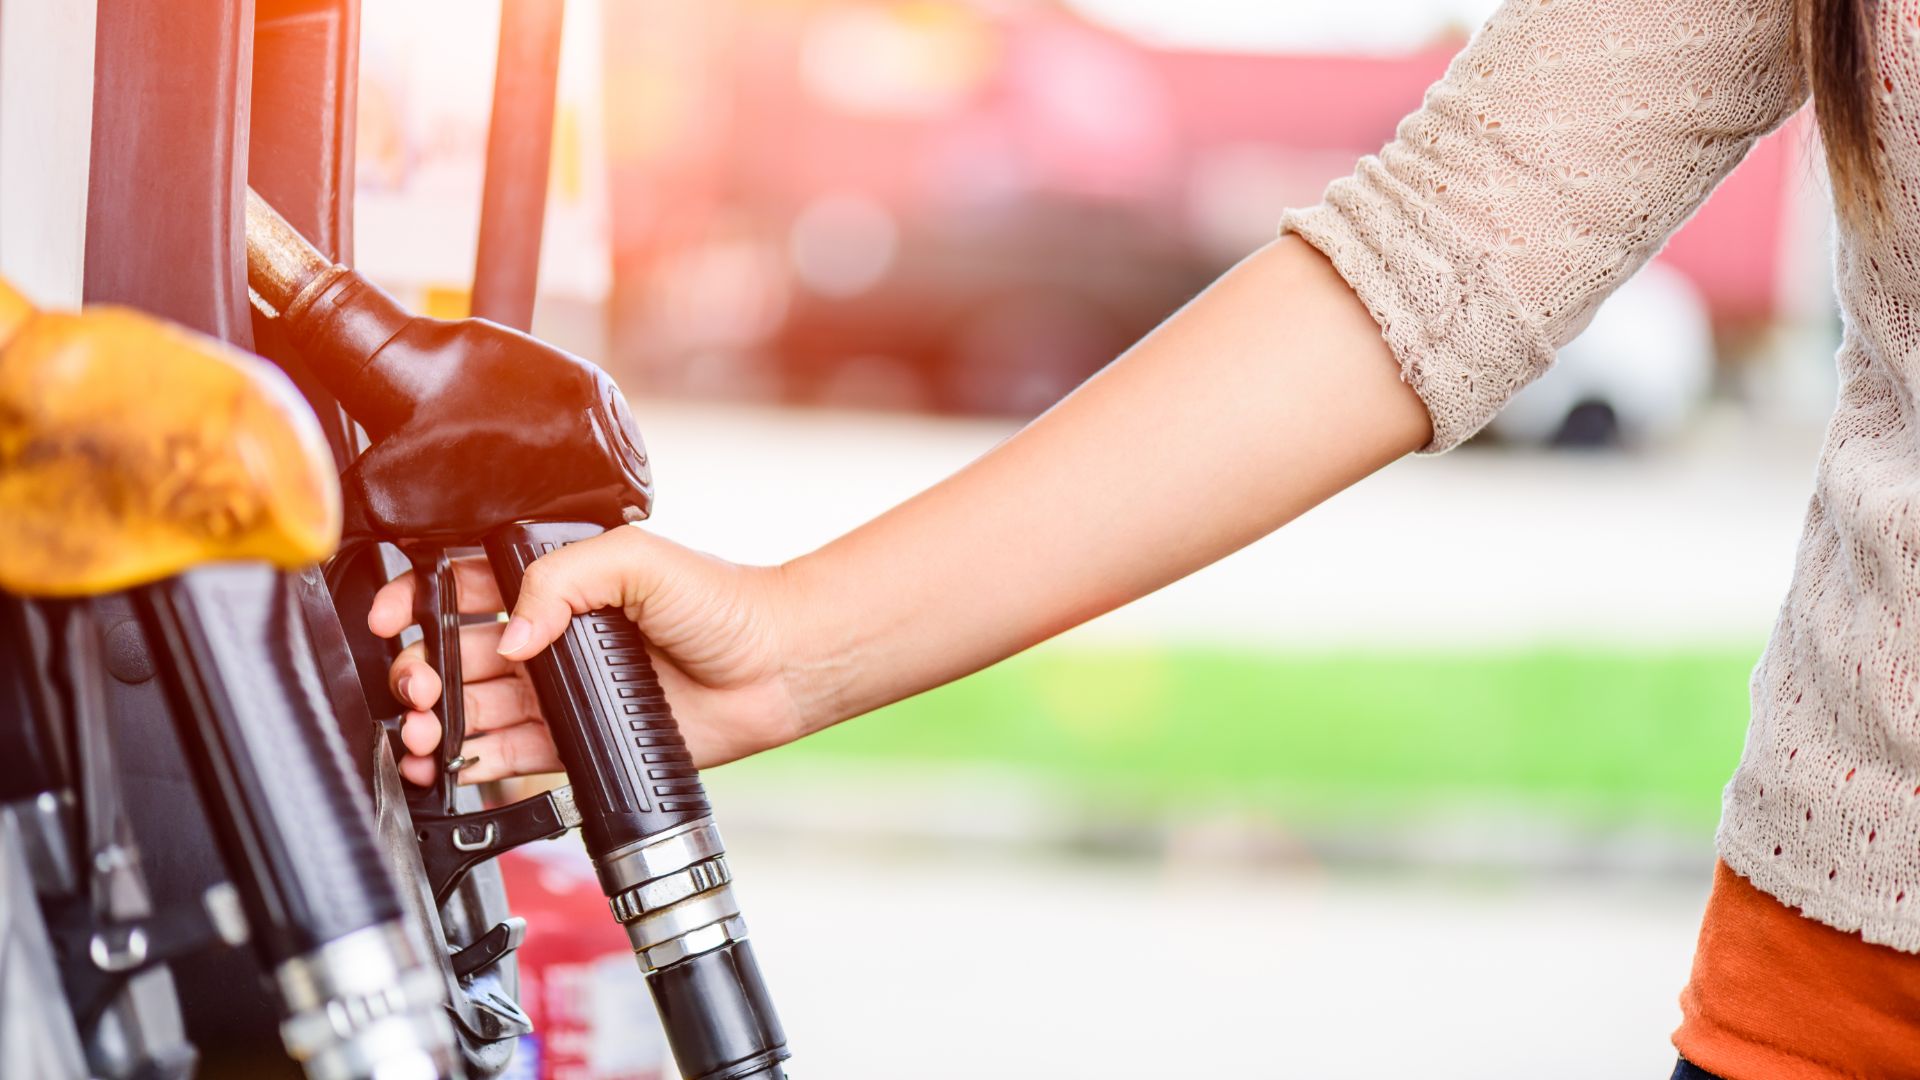 fuel price rises saudi attacks